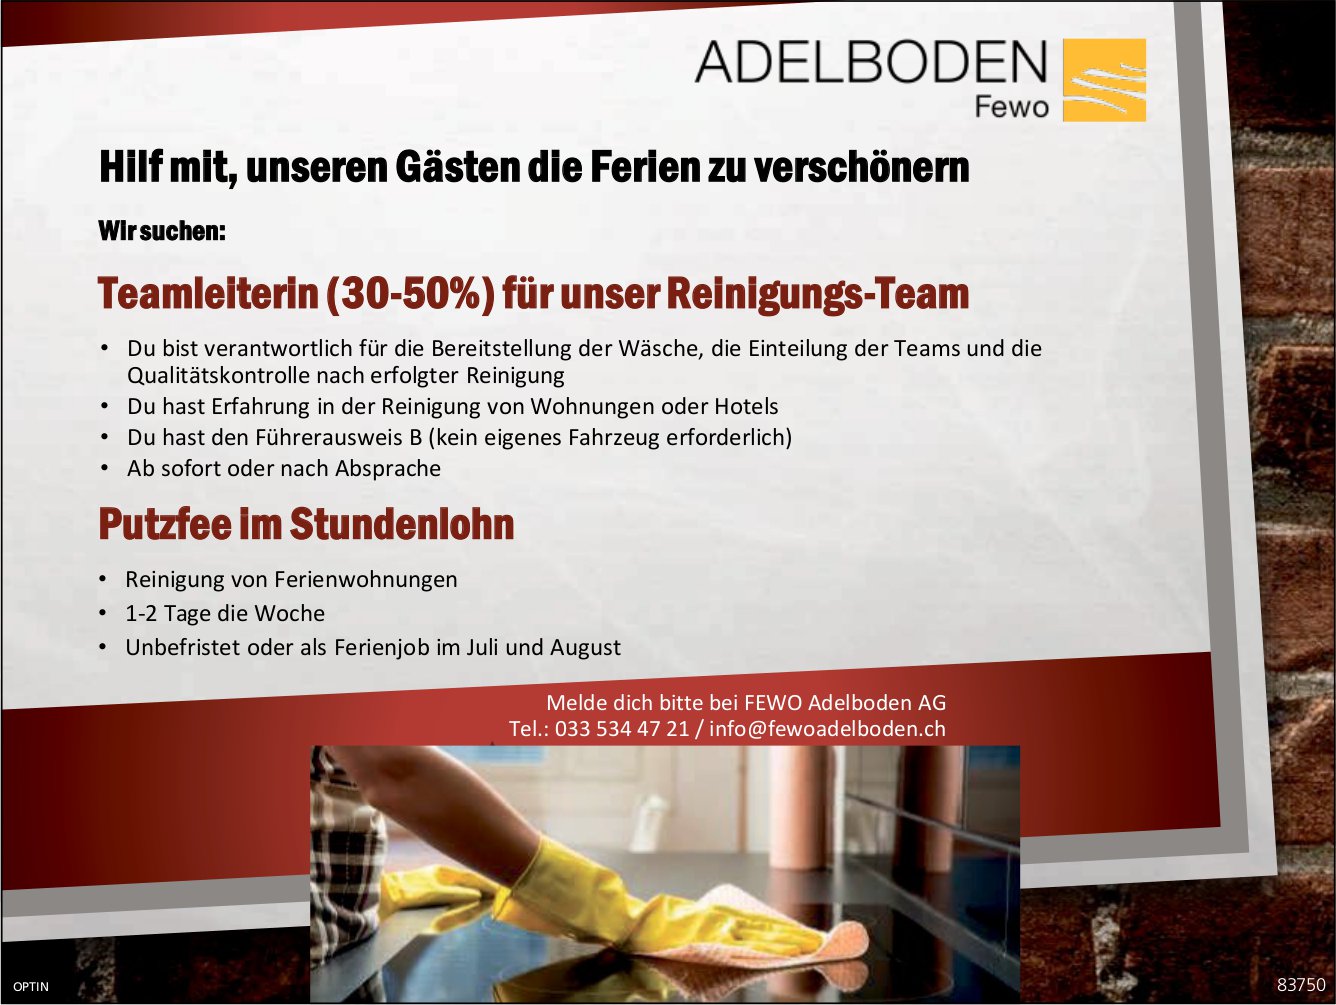 Putzfee Teamleiterin (30-50%), Fewo Adelboden AG, gesucht